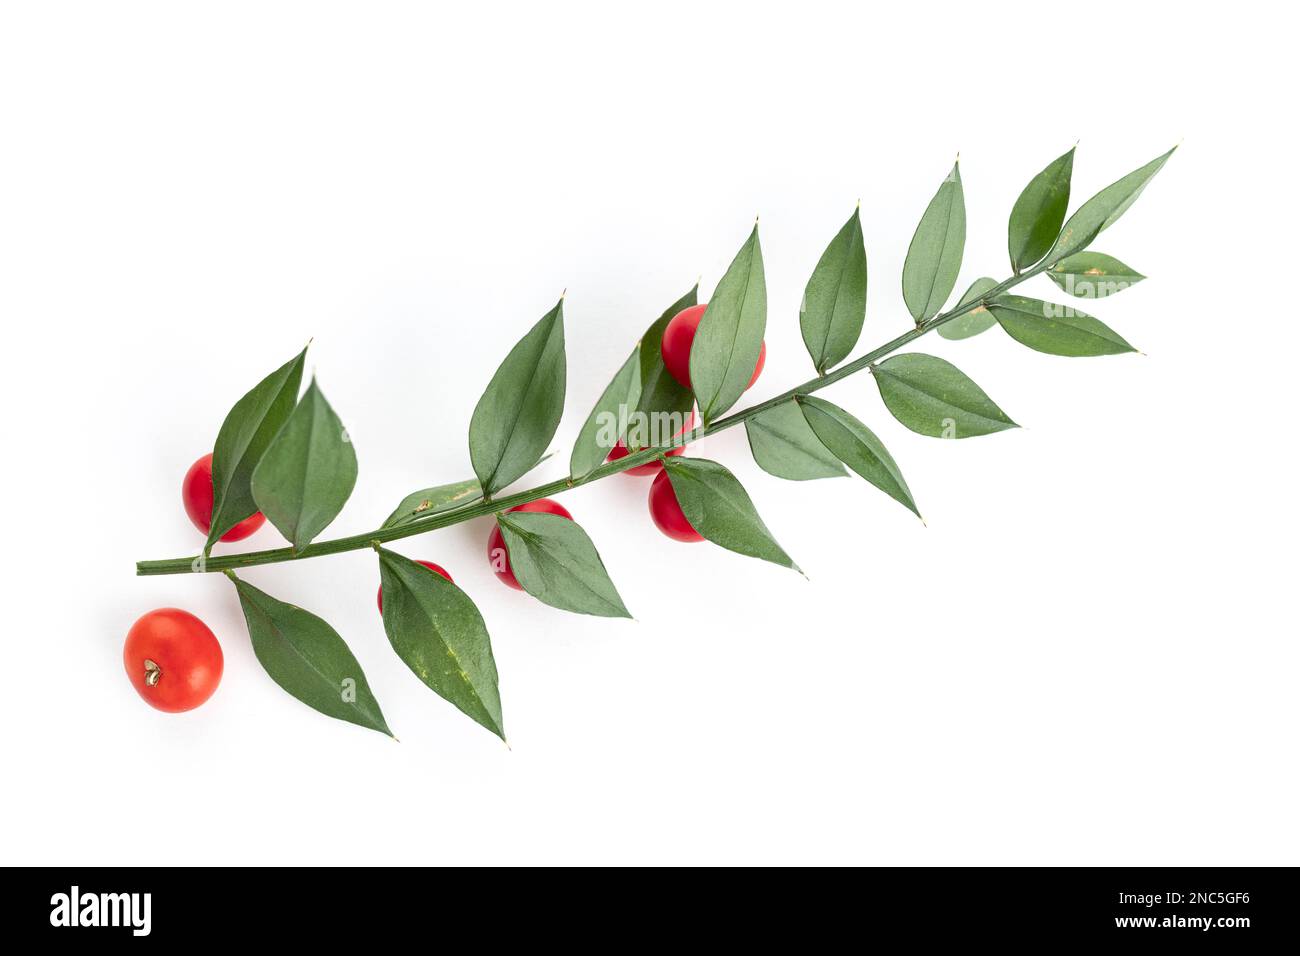 Scopa da macelleria fresca o ramoscello di Ruscus aculeatus con foglie e frutti rossi isolati su fondo bianco Foto Stock